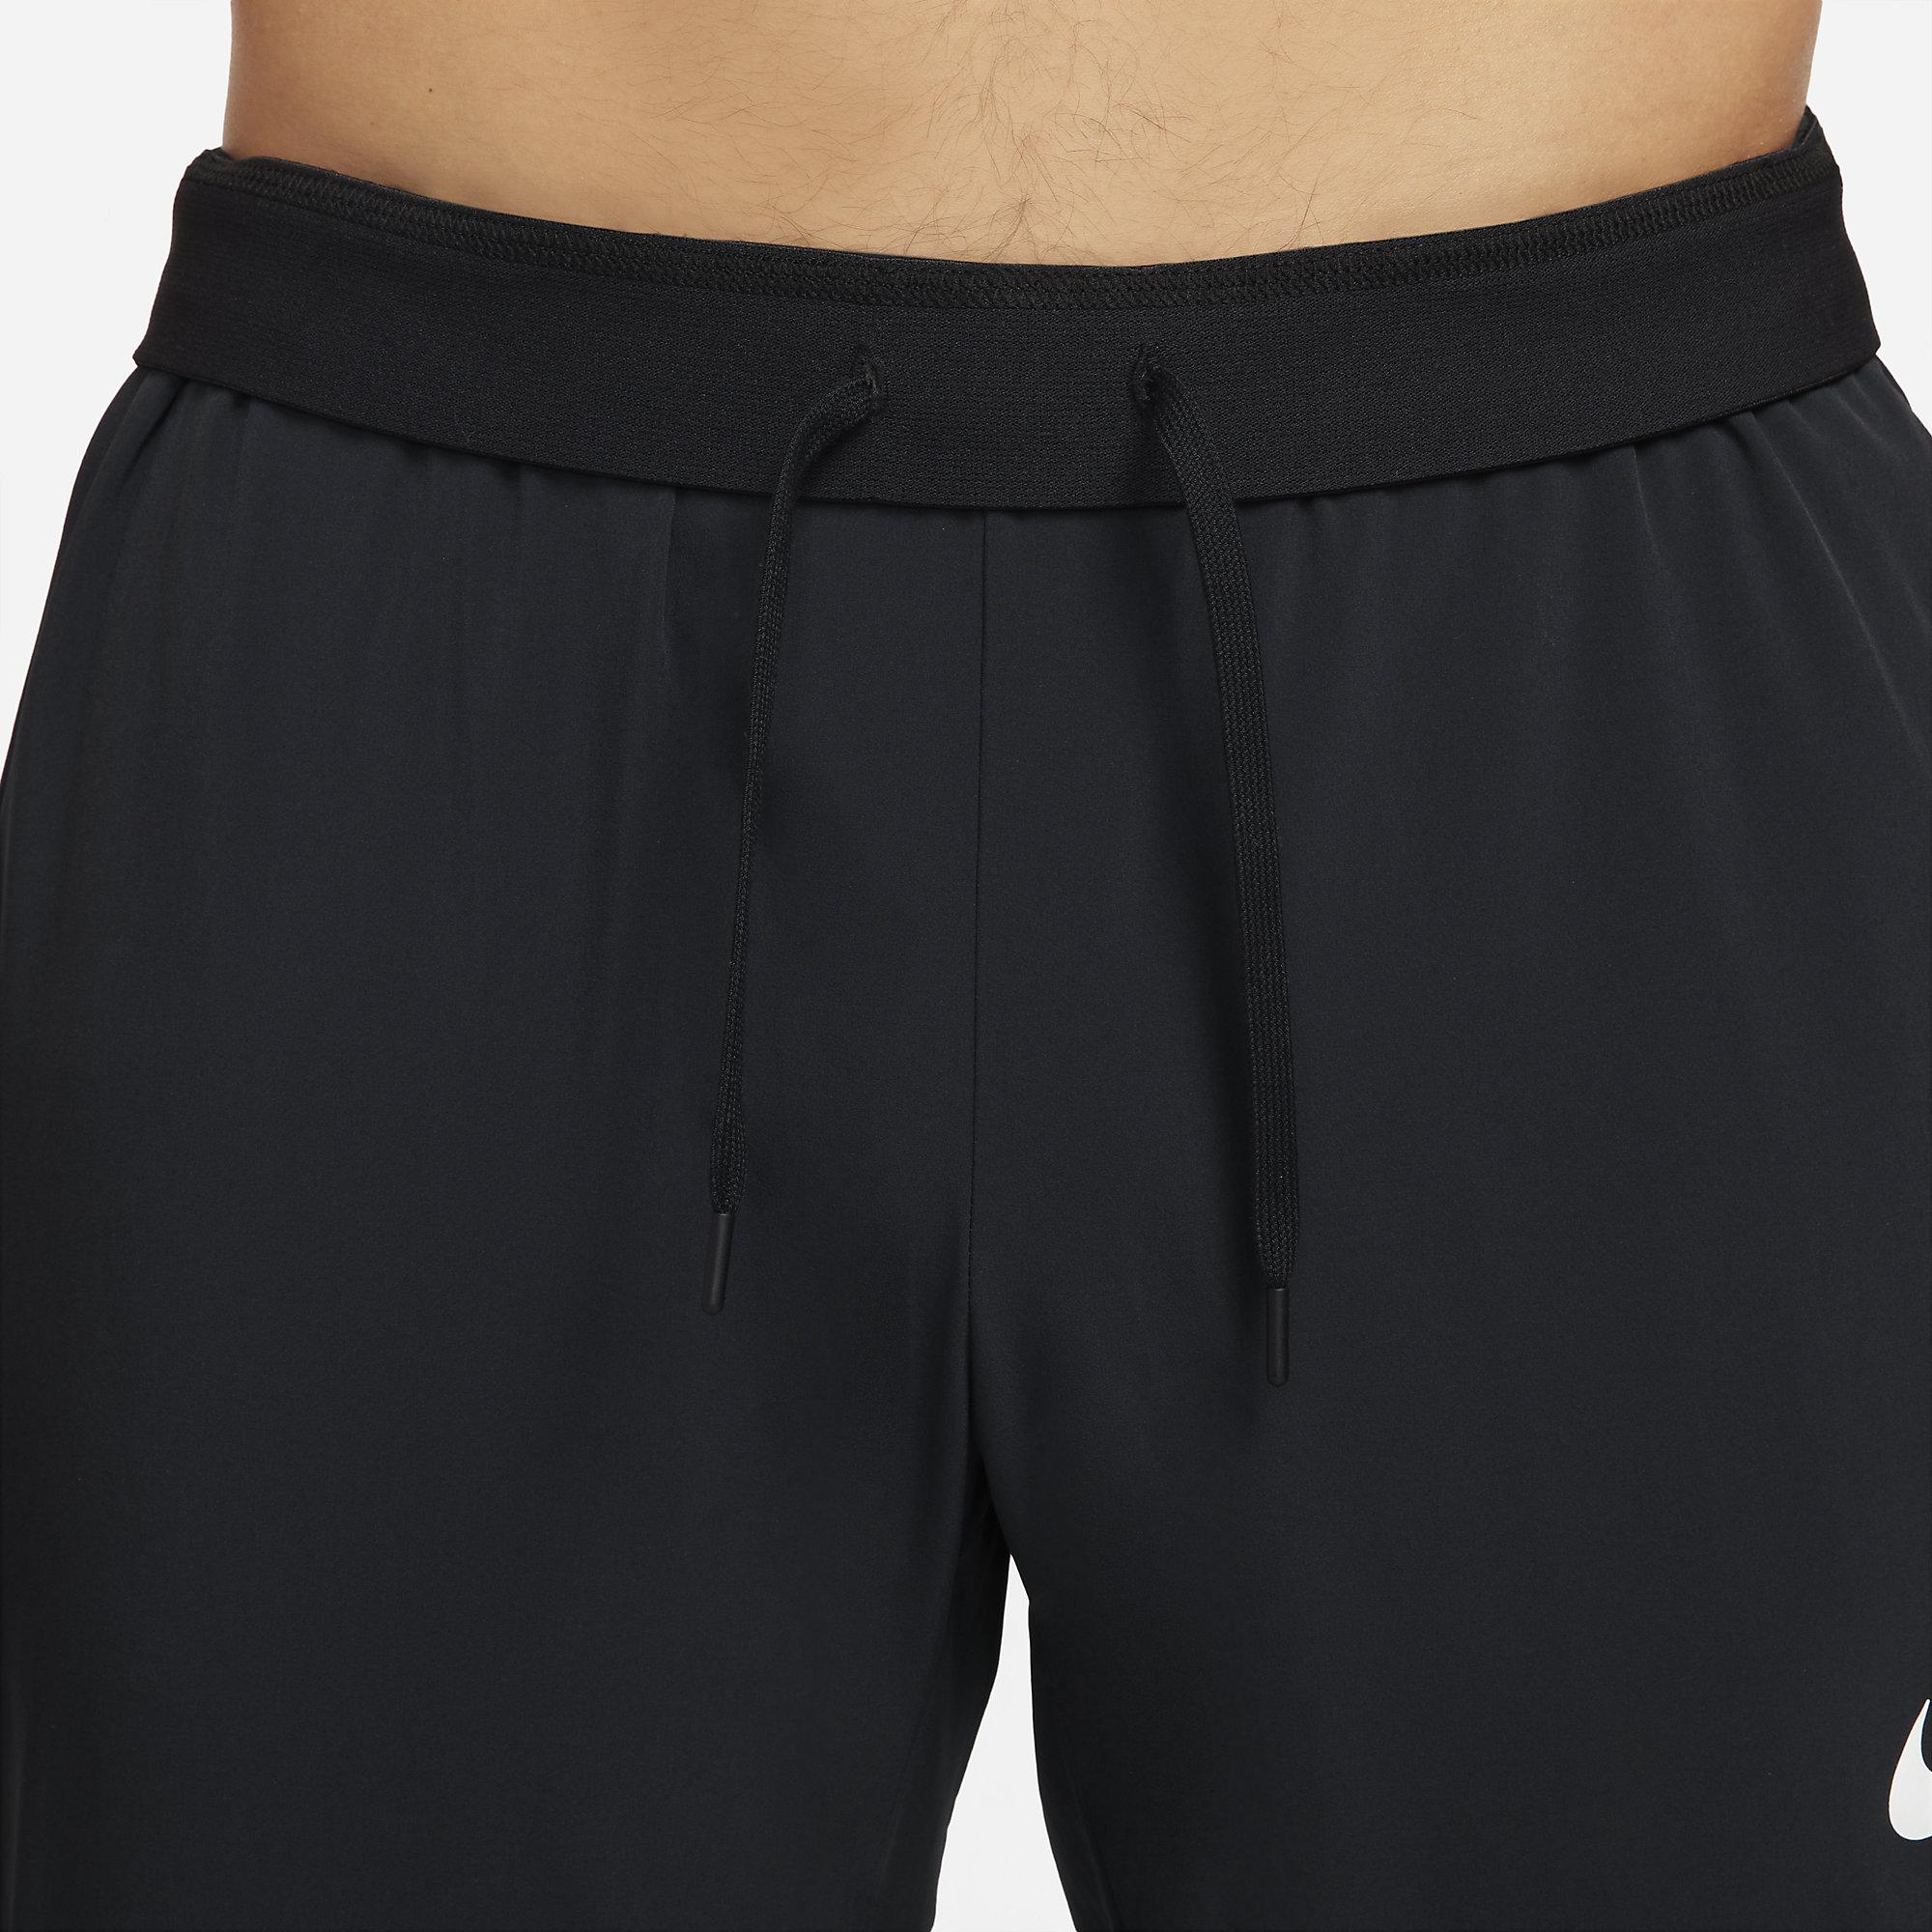 Nike Mens Vent Max Pants - Black - Tennisnuts.com